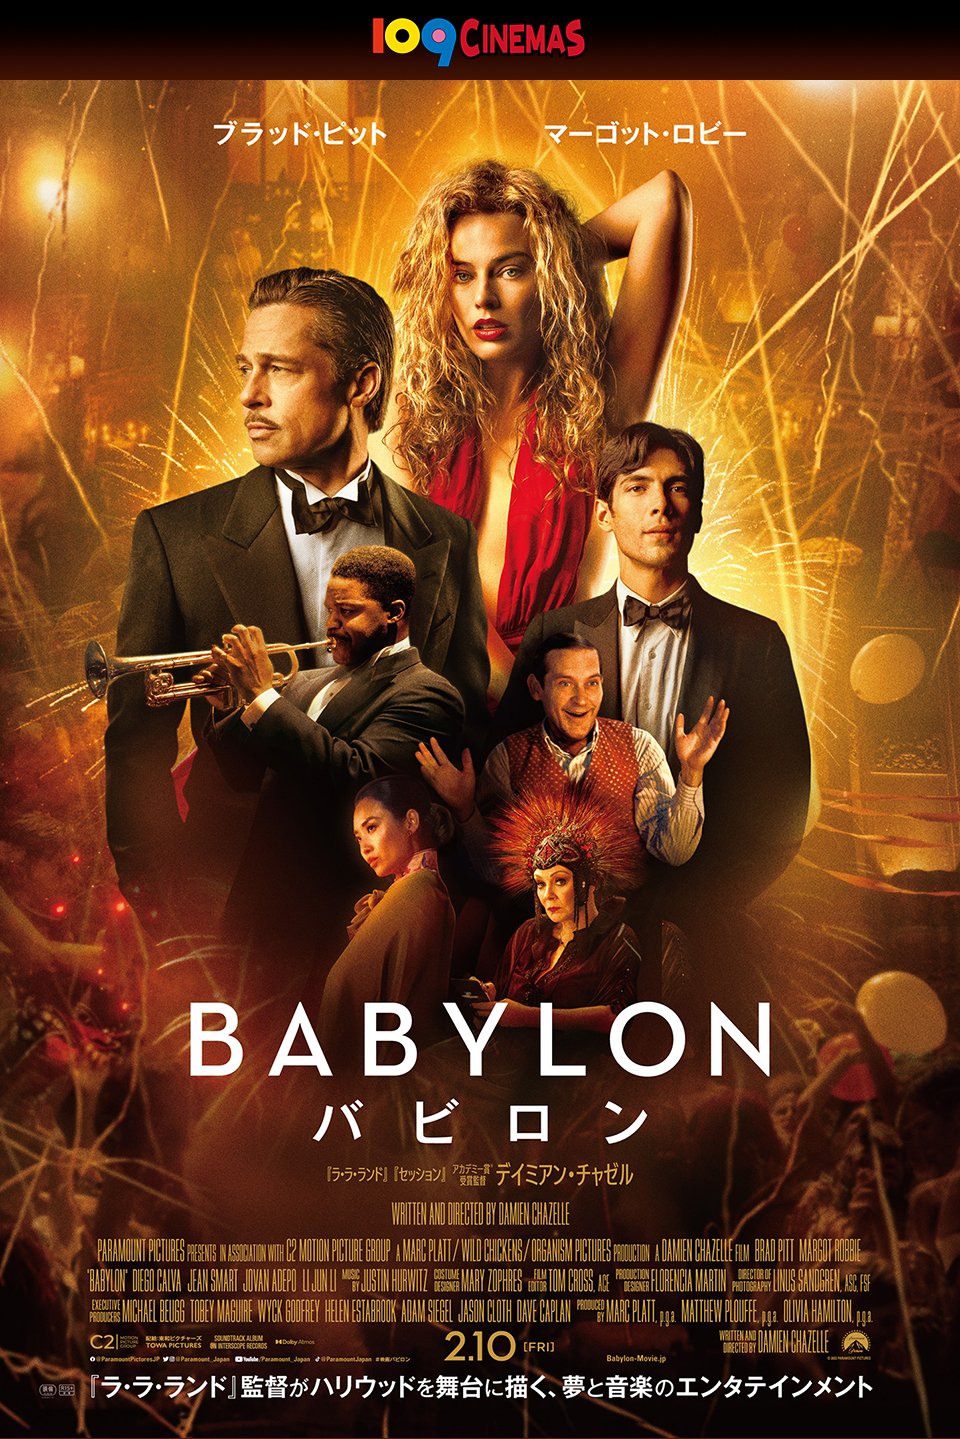 109CINEMAS　『BABYLON バビロン』2.10 [FRI]  『ラ・ラ・ランド』監督がハリウッドを舞台に描く、夢と音楽のエンタテインメント